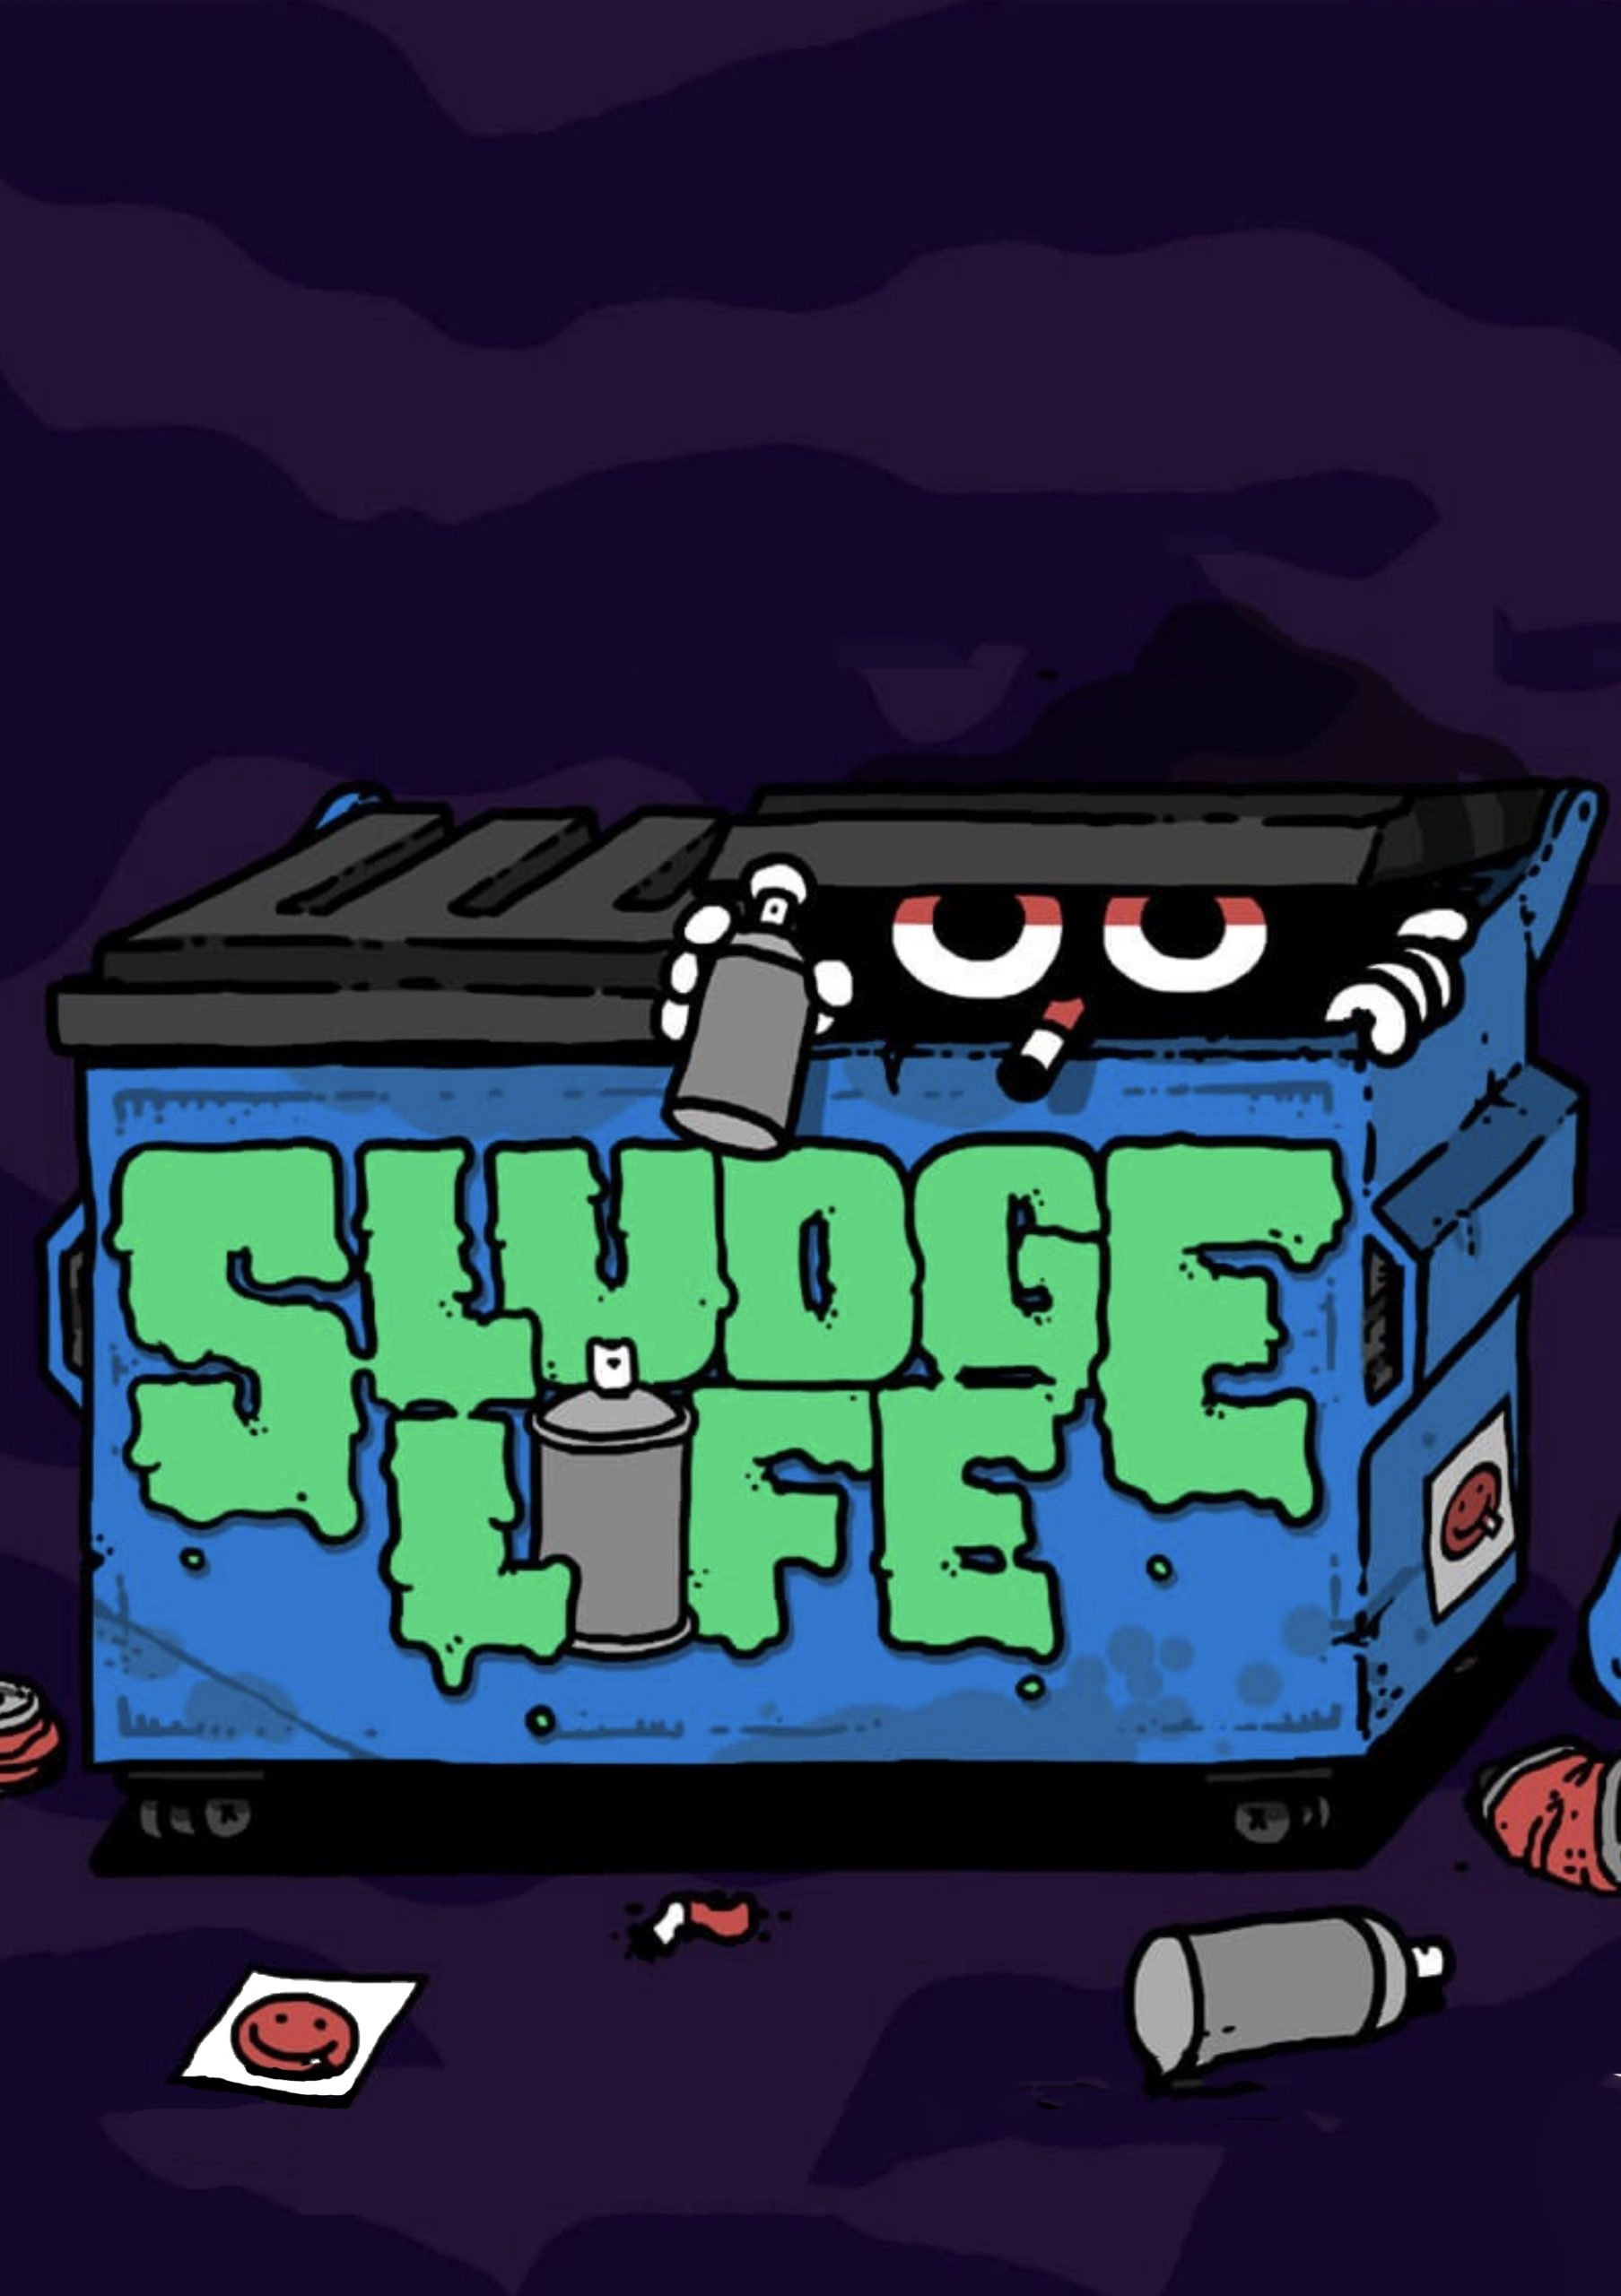 Capa de Sludge Life